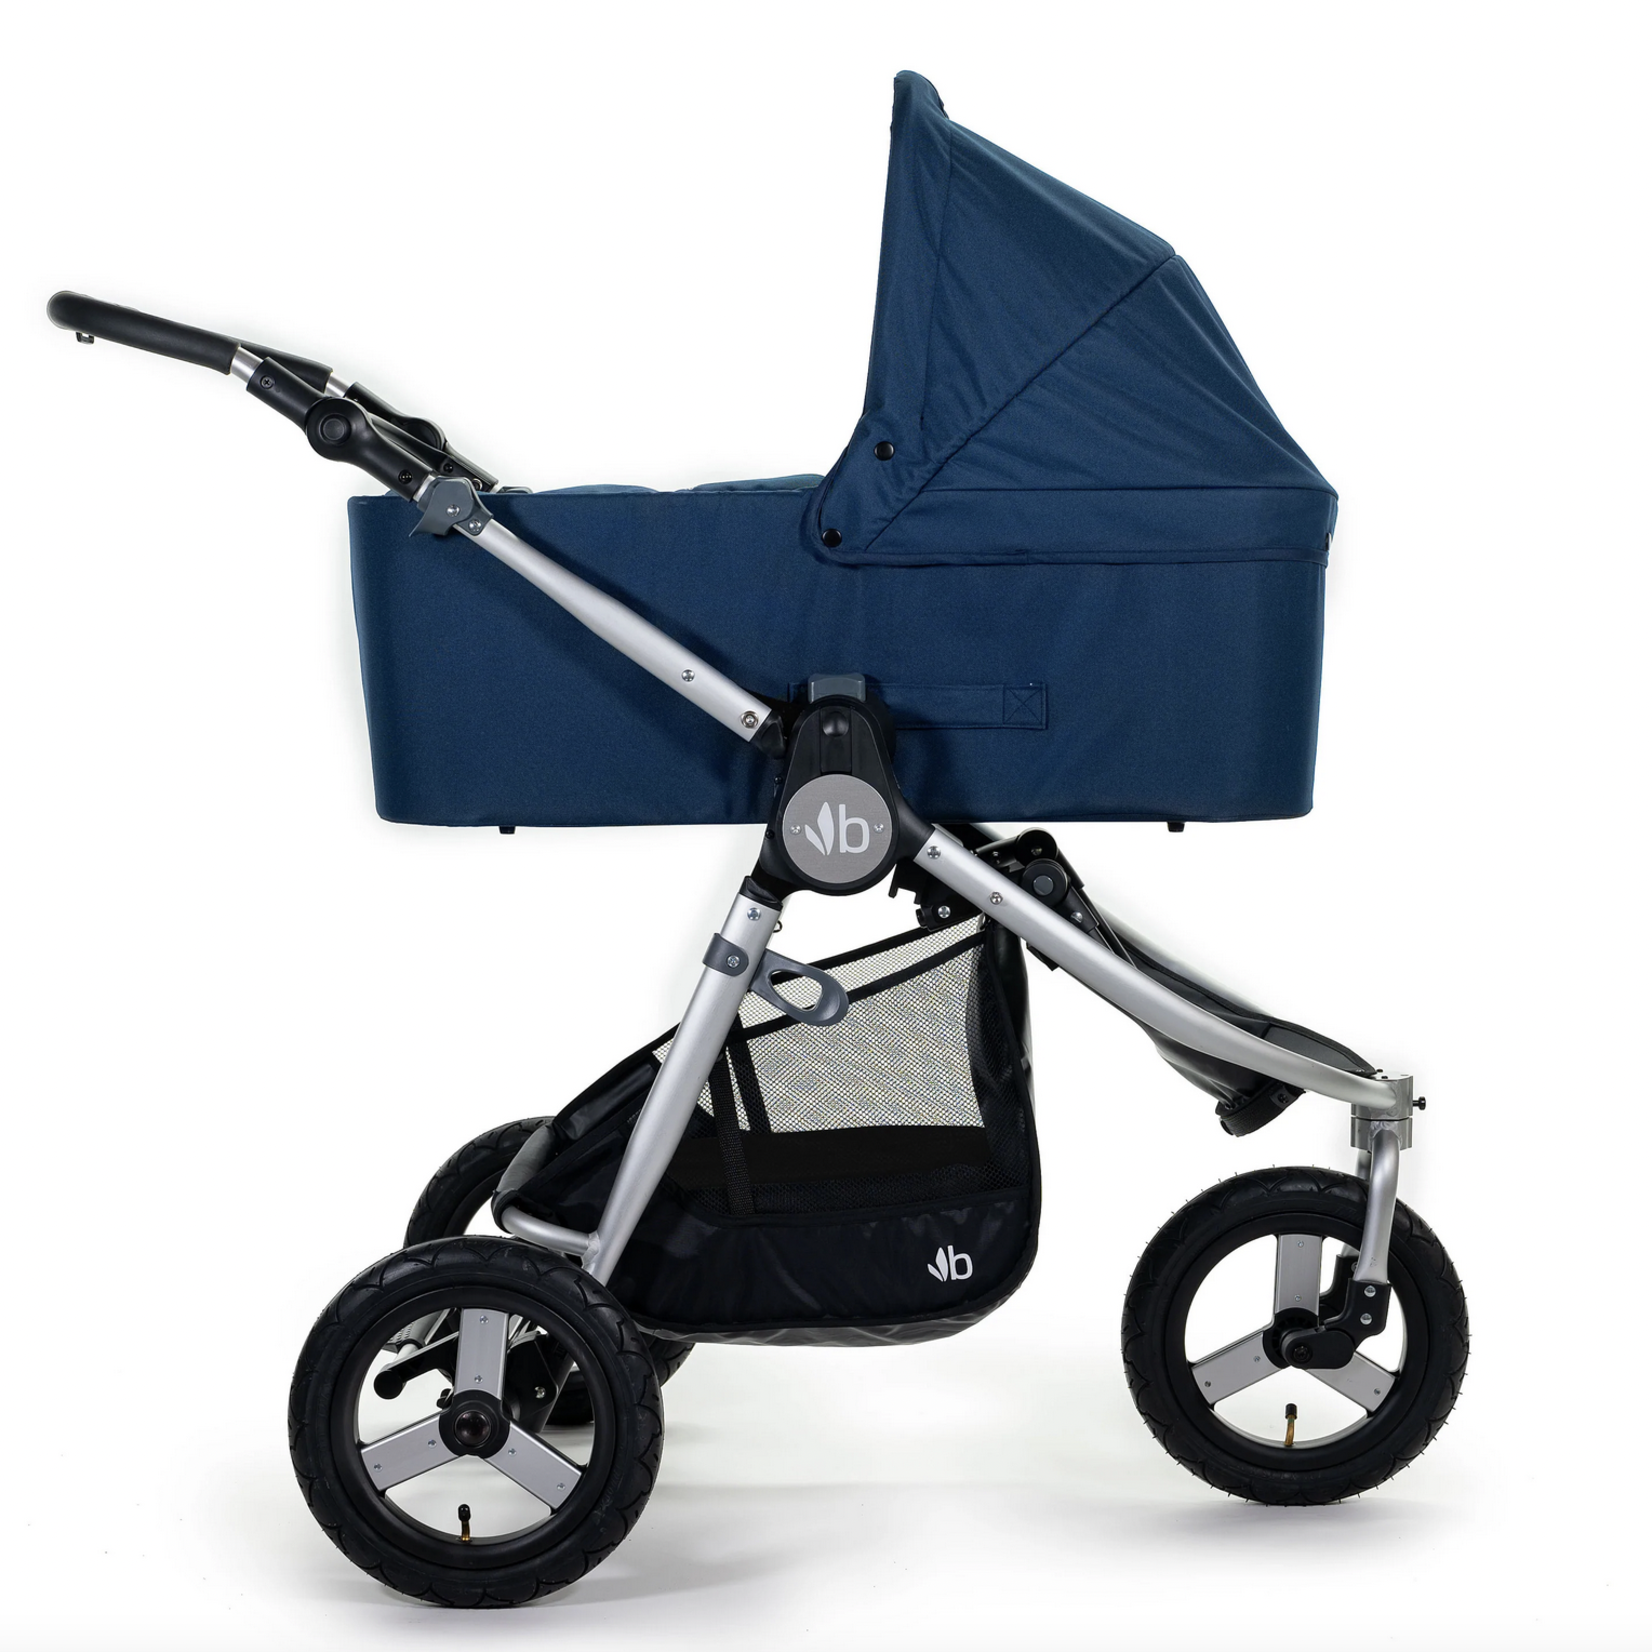 Bumbleride Indie 3 wheel stroller-Maritime Blue